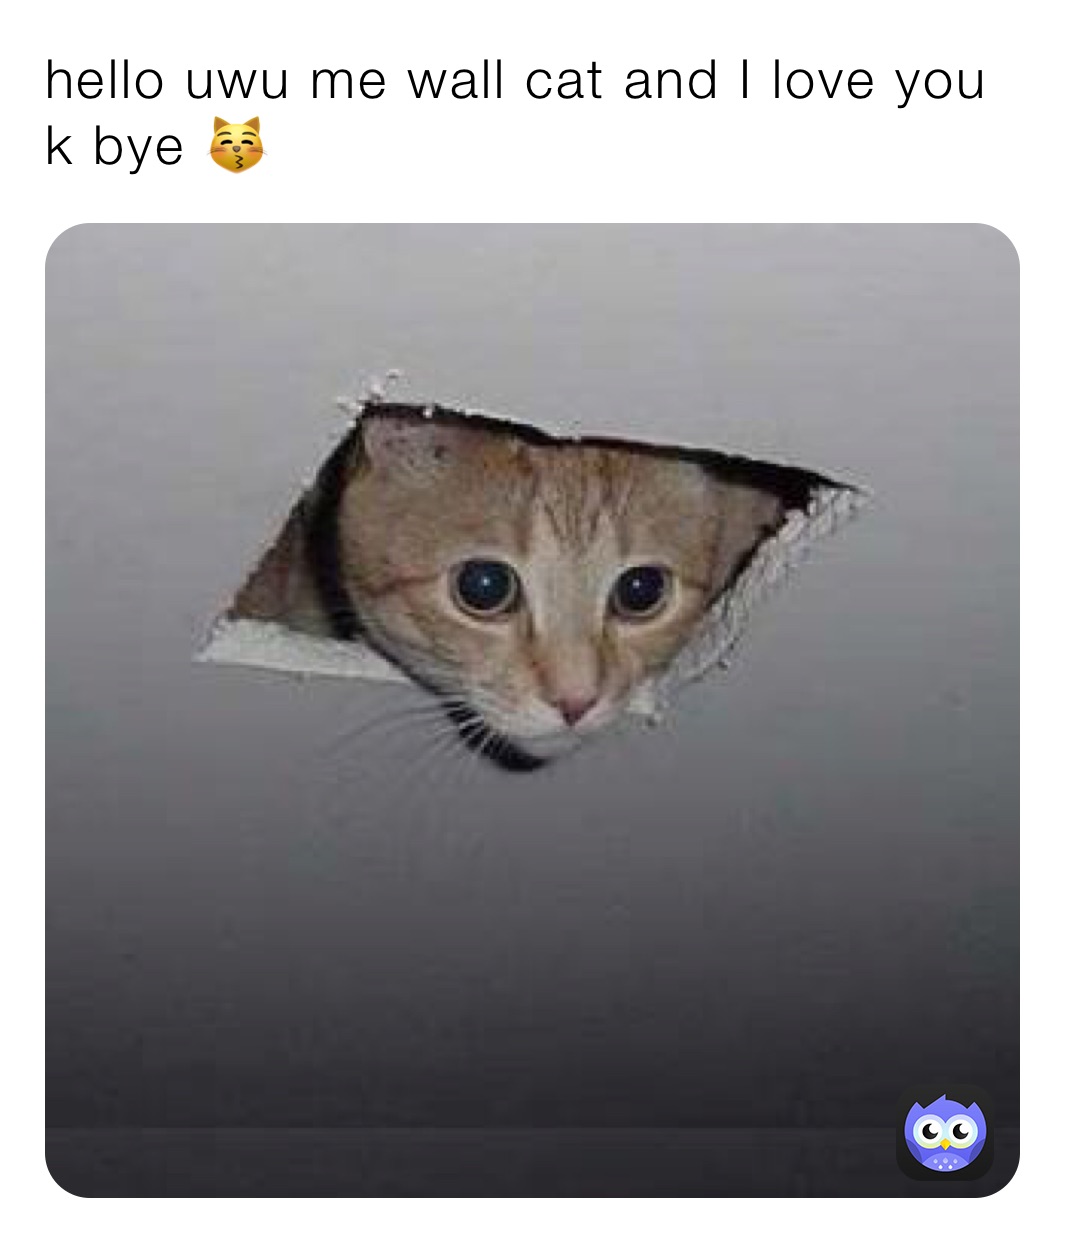 hello uwu me wall cat and I love you k bye 😽  hi me wall cat and I love you k bye 